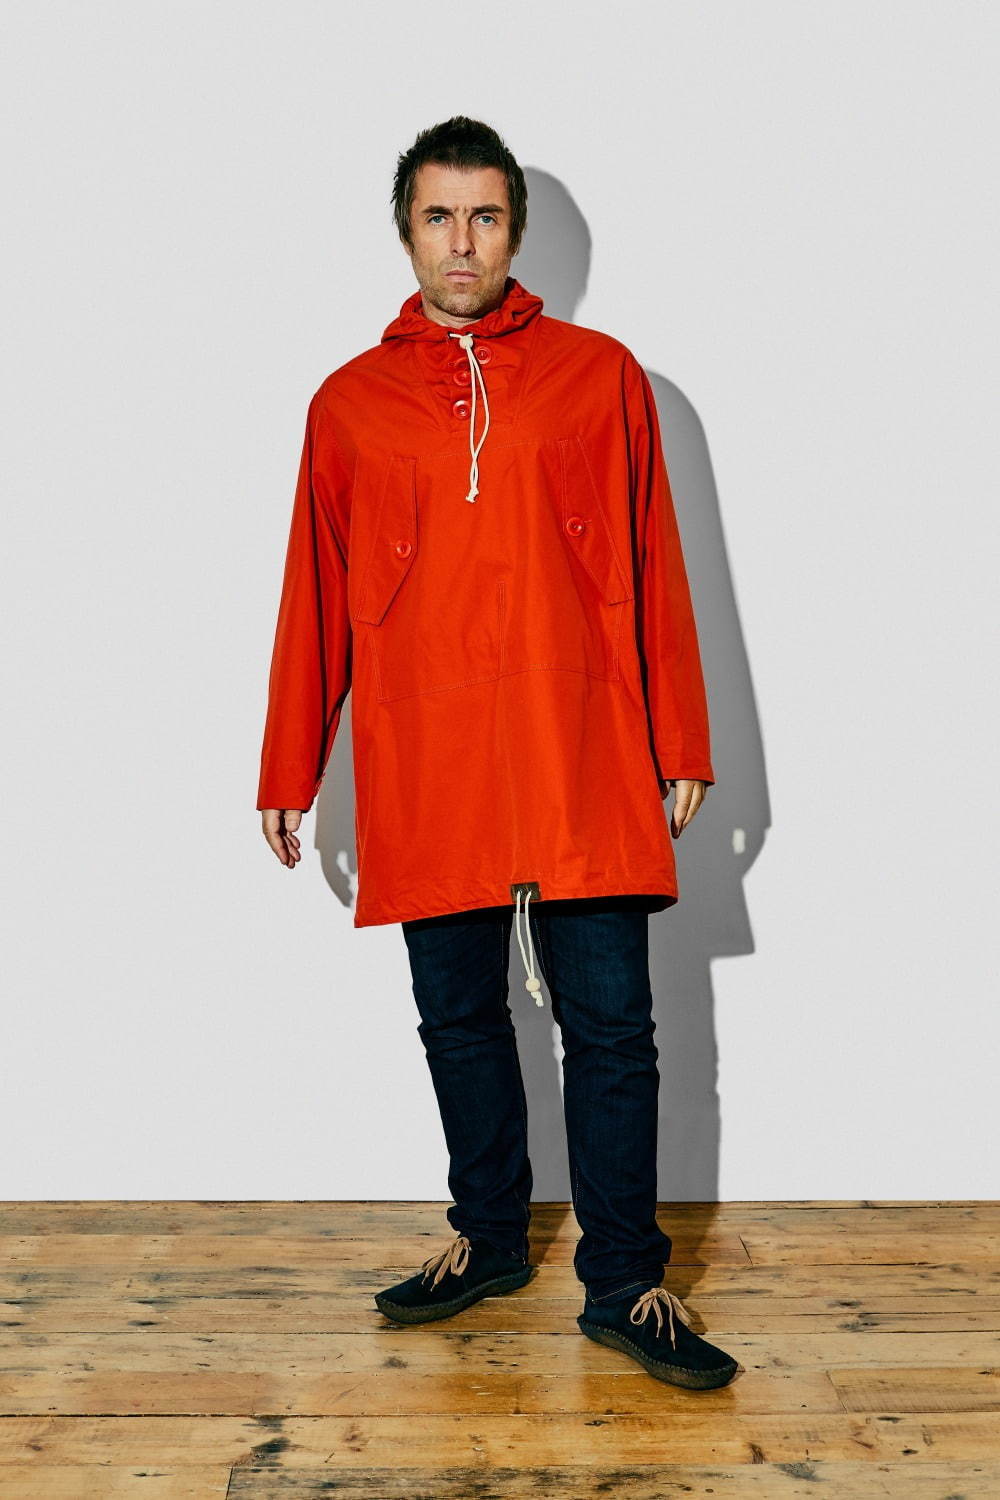 ナイジェル ケーボン リアム ギャラガーのコラボスモック 40 Sヴィンテージミリタリーに着想 ファッションプレス